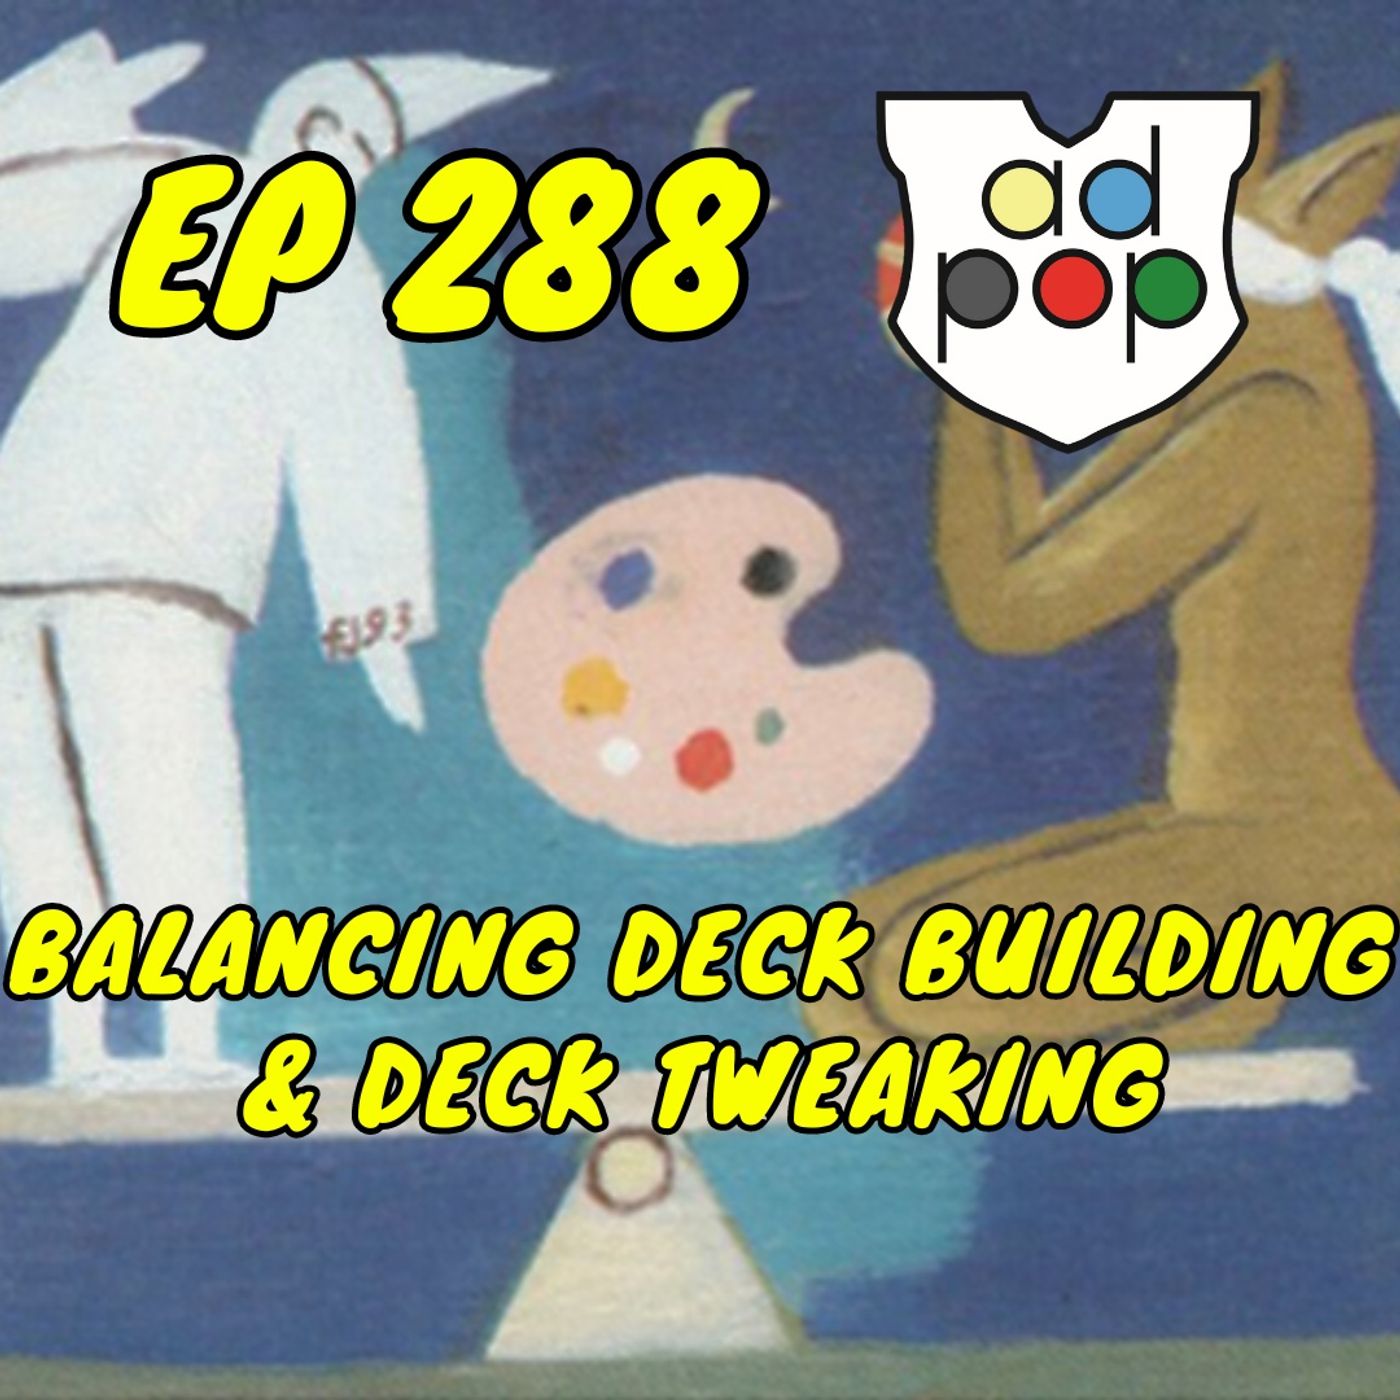 Commander ad Populum, Ep 288 - Balancing Deck Building & Deck Tweaking